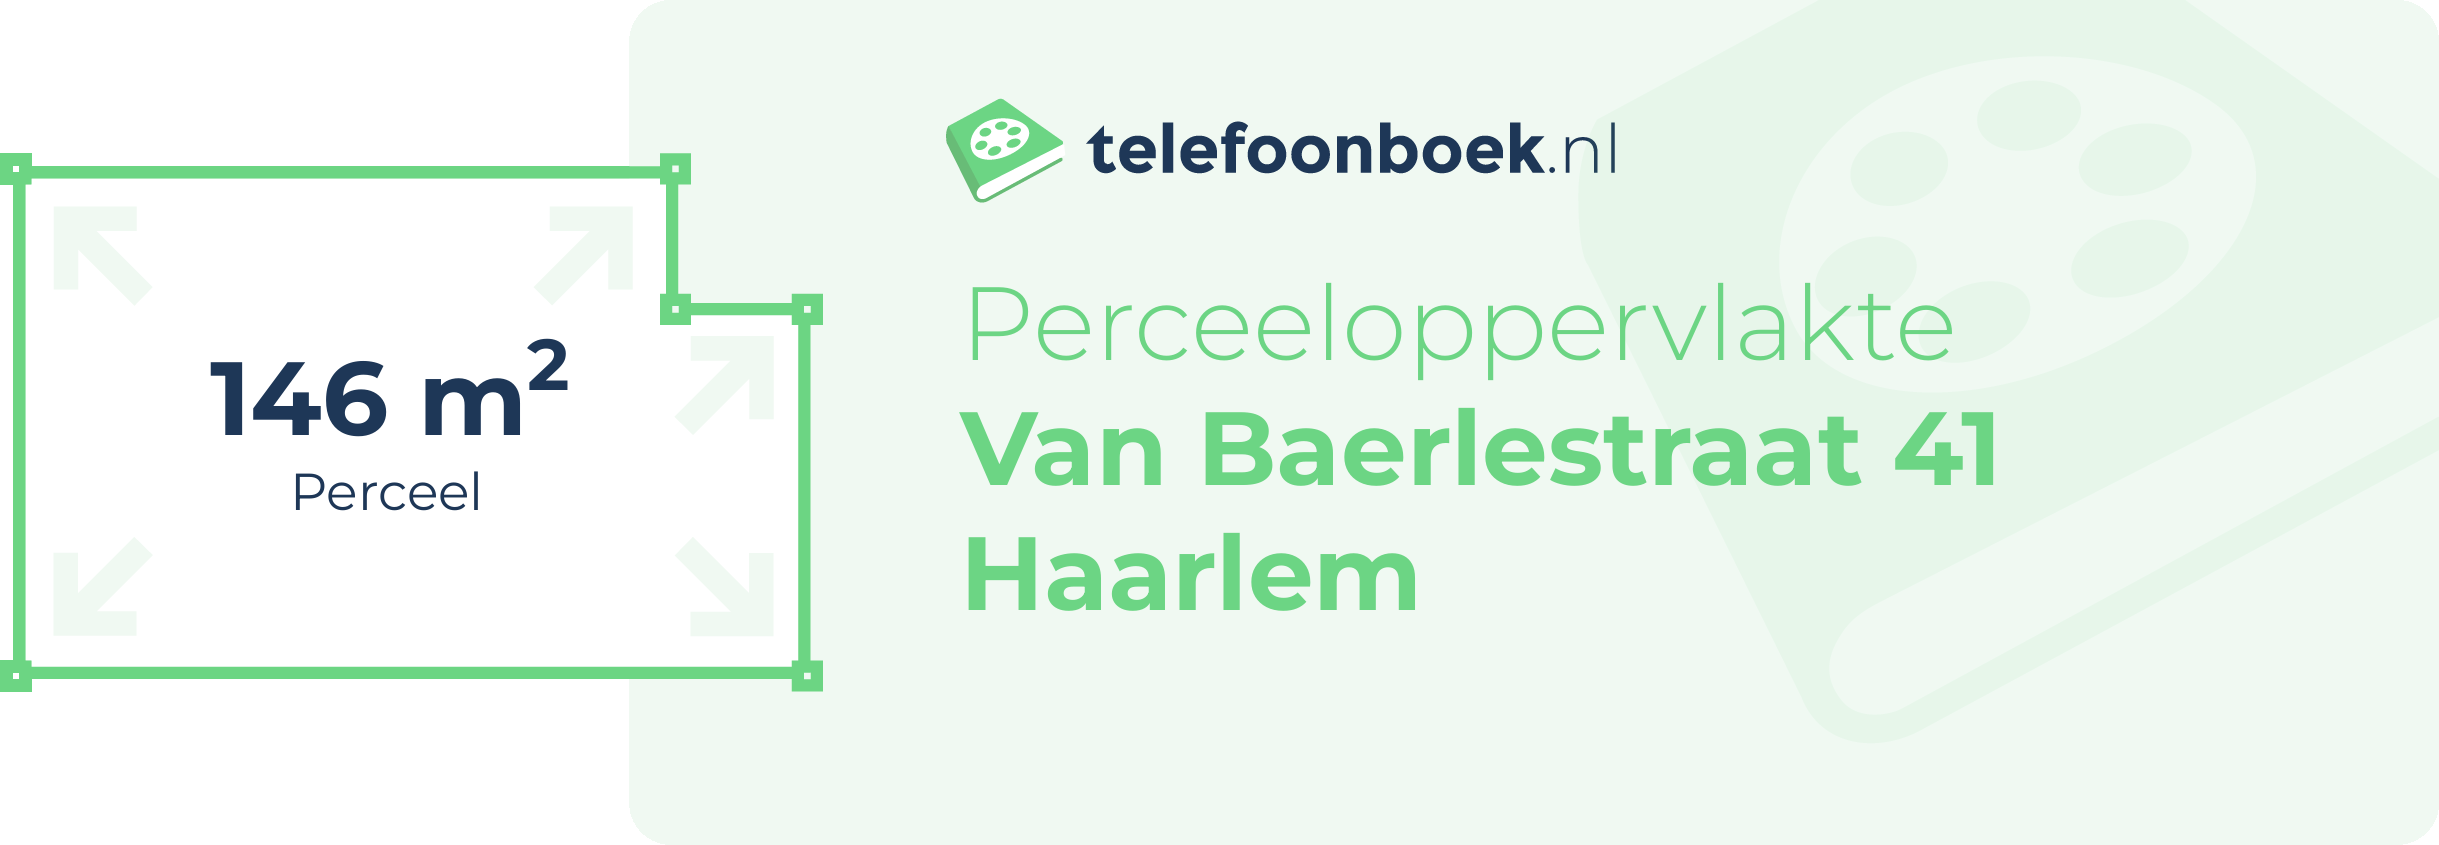 Perceeloppervlakte Van Baerlestraat 41 Haarlem